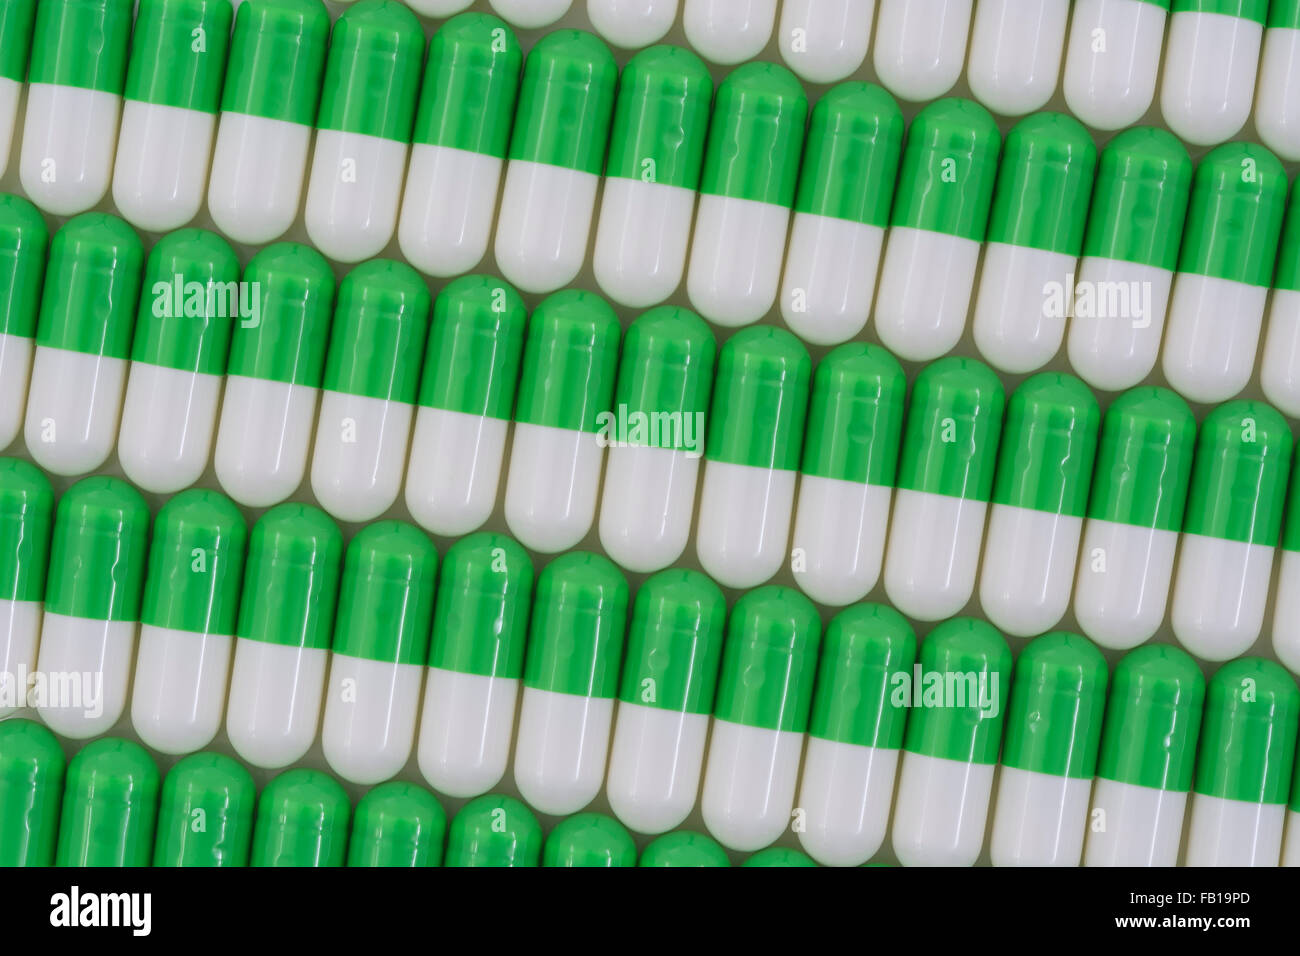 Primer plano de pastillas - forma de cápsula hecha de gelatina. Pastillas verdes / blancas. Metáfora tomando a las compañías farmacéuticas estadounidenses sobre los altos precios de los medicamentos, ensayos de drogas. Foto de stock